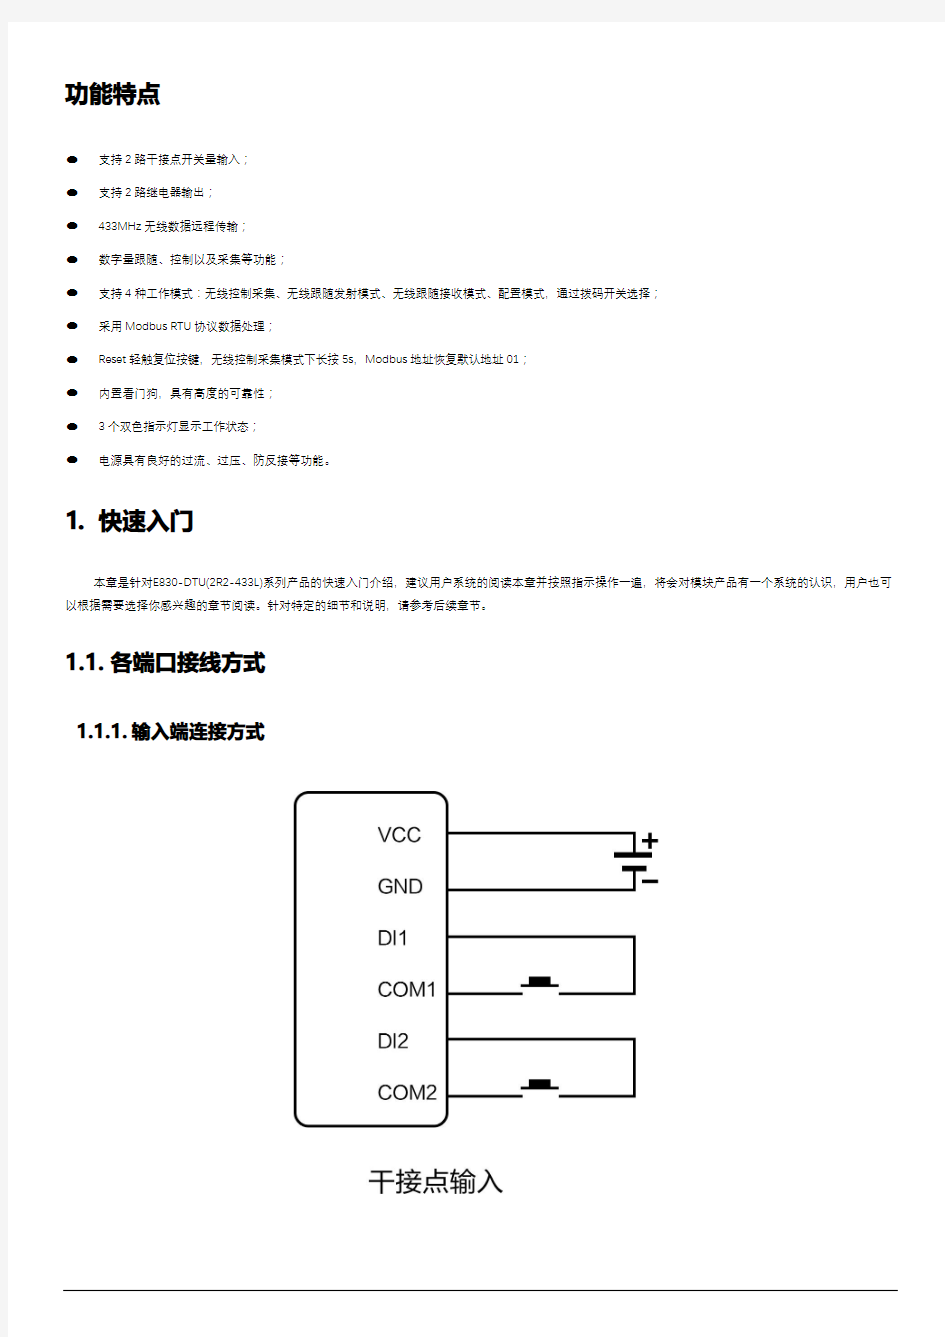 亿佰特(Ebyte)-无线数传电台E830-DTU(2R2-433L)用户使用手册-v1.0